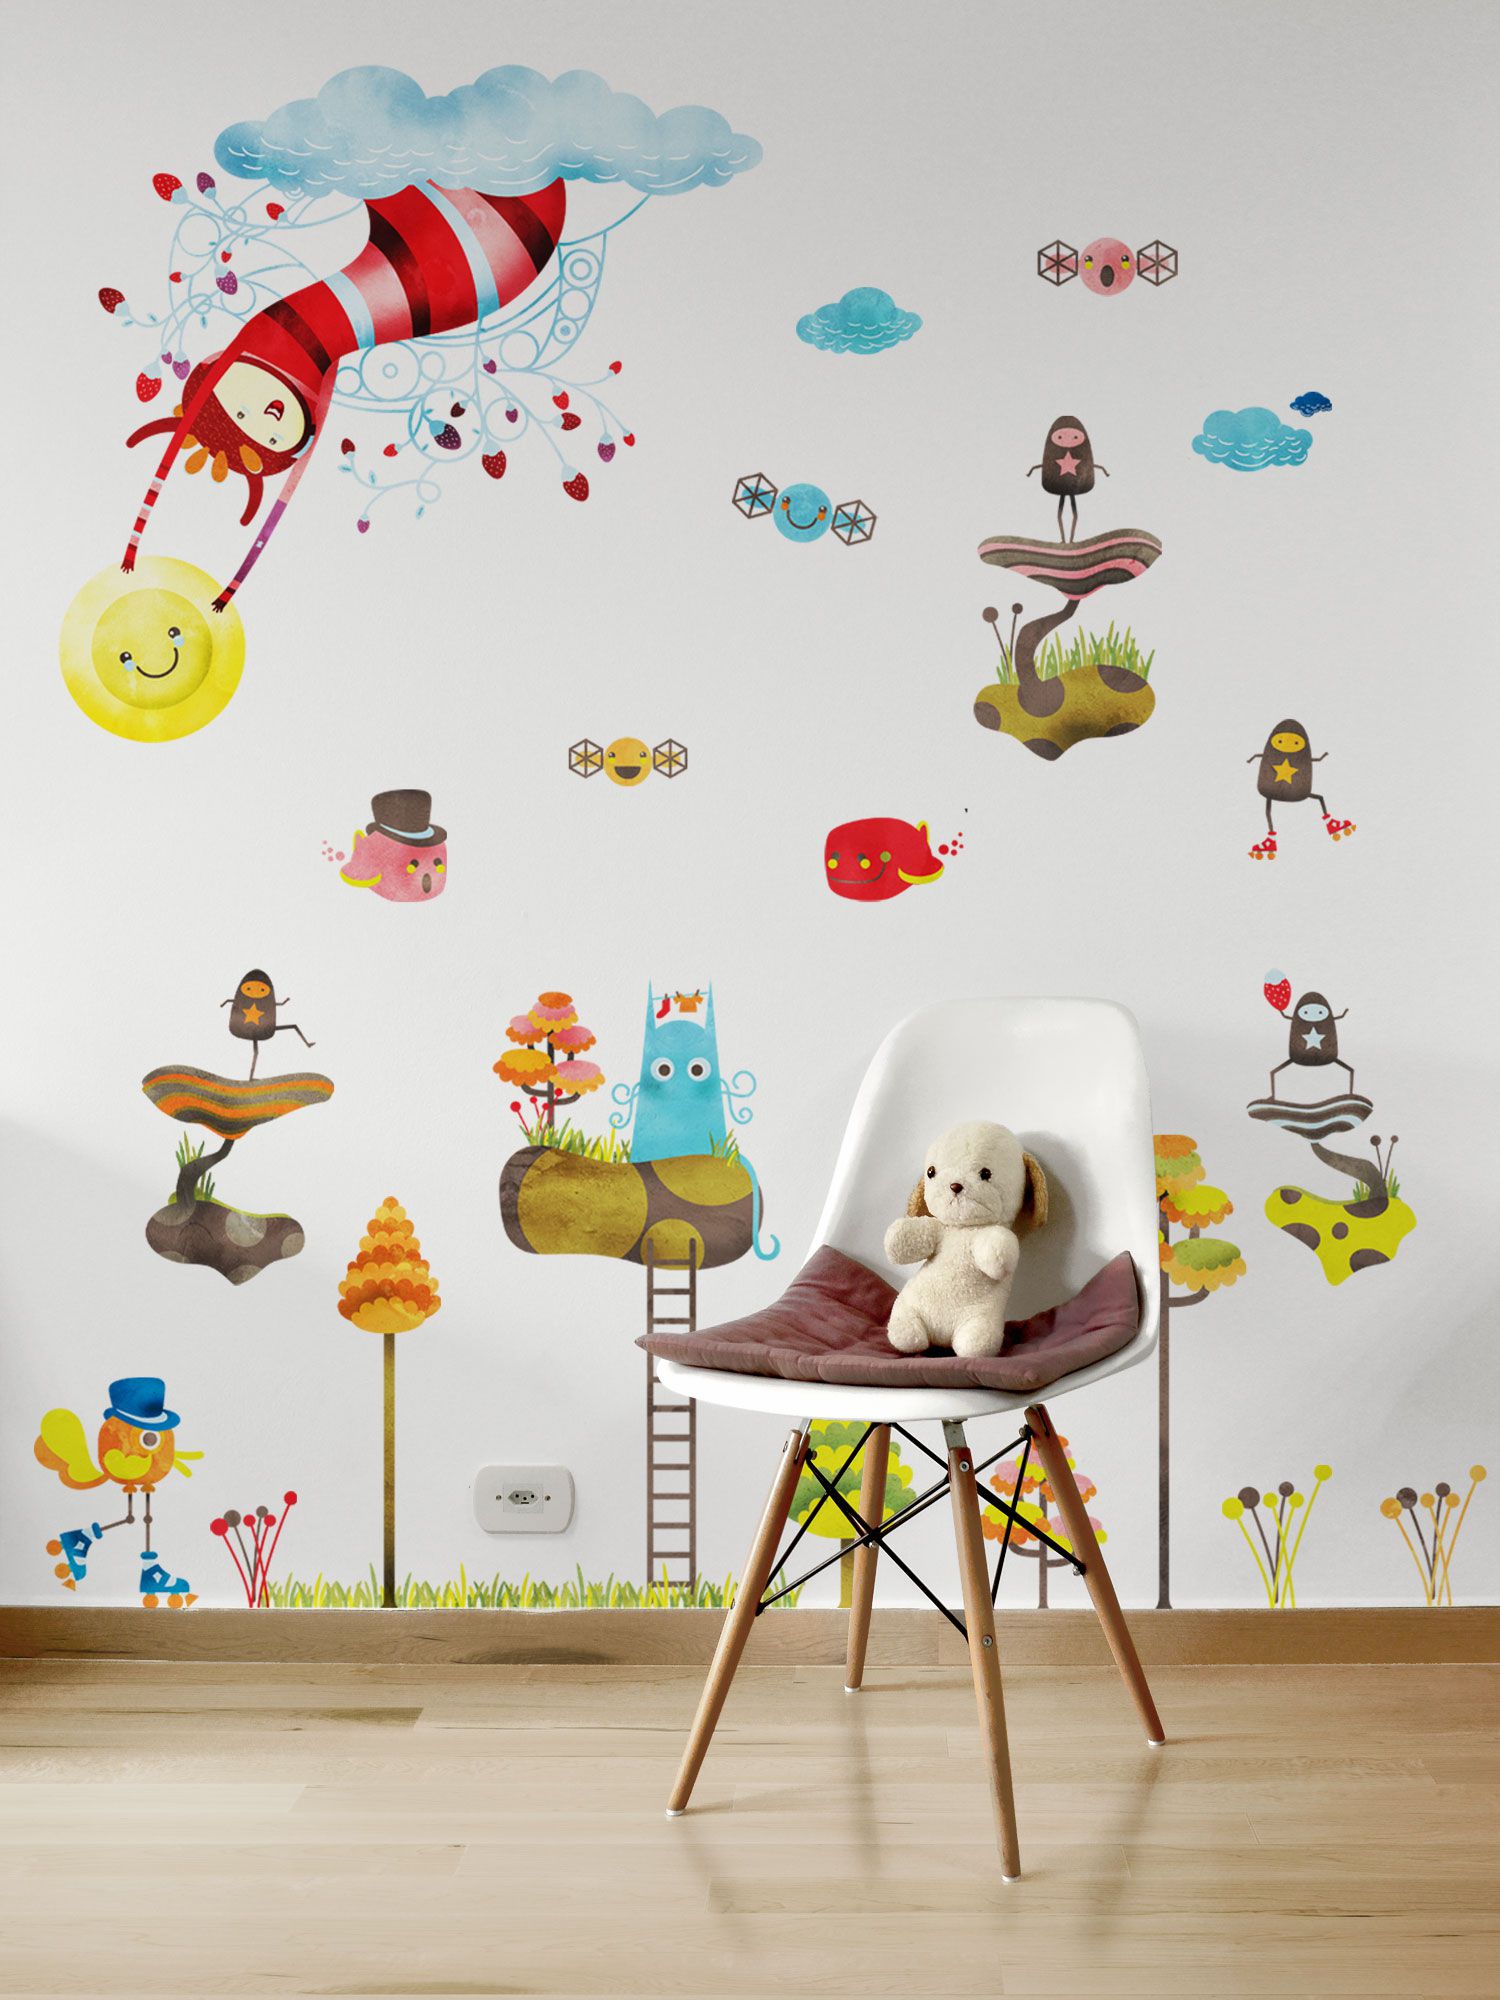 Adesivo de parede para quarto infantil - Shopkola - Shopkola - Papel de  parede adesivo, Adesivos de Parede, Painel Adesivo, adesivo de azulejos,  posters e lousas.